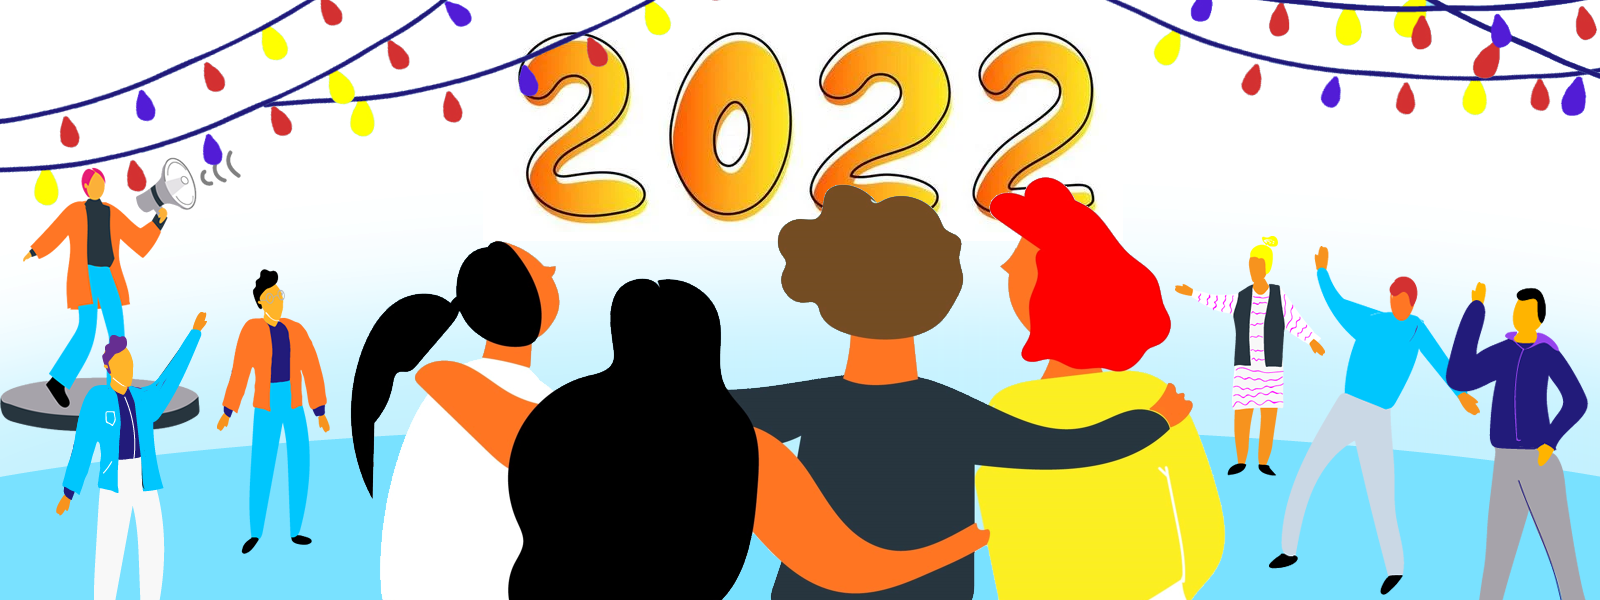 Un breve recorrido por nuestro 2021 con vistas a 2022